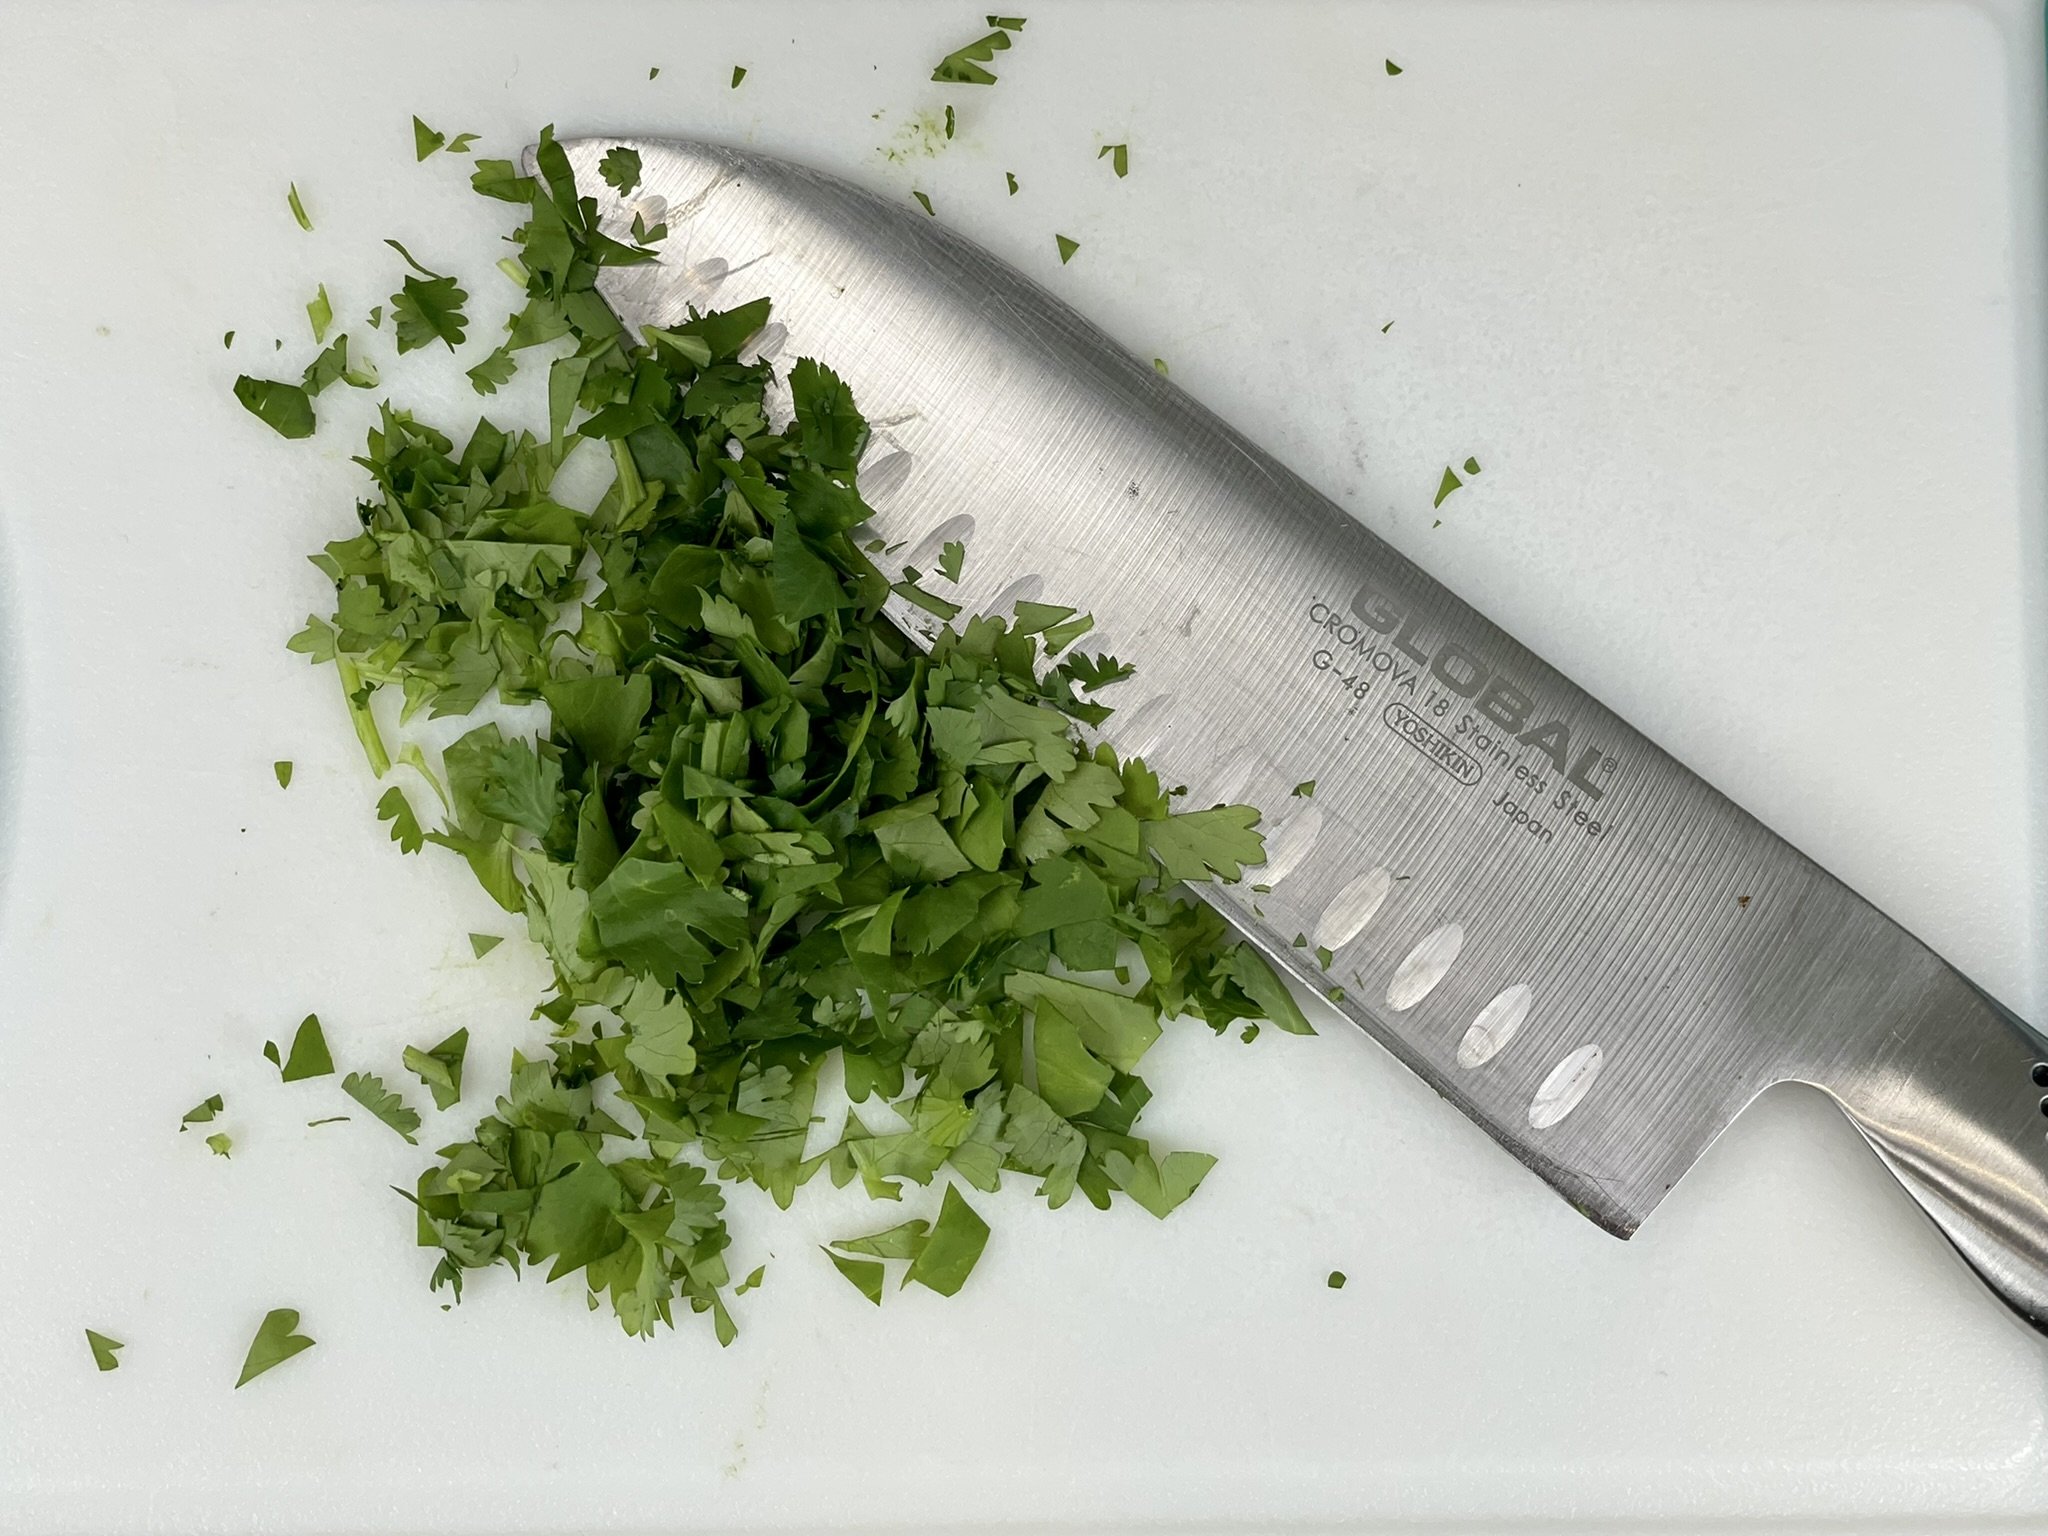 Chop cilantro.